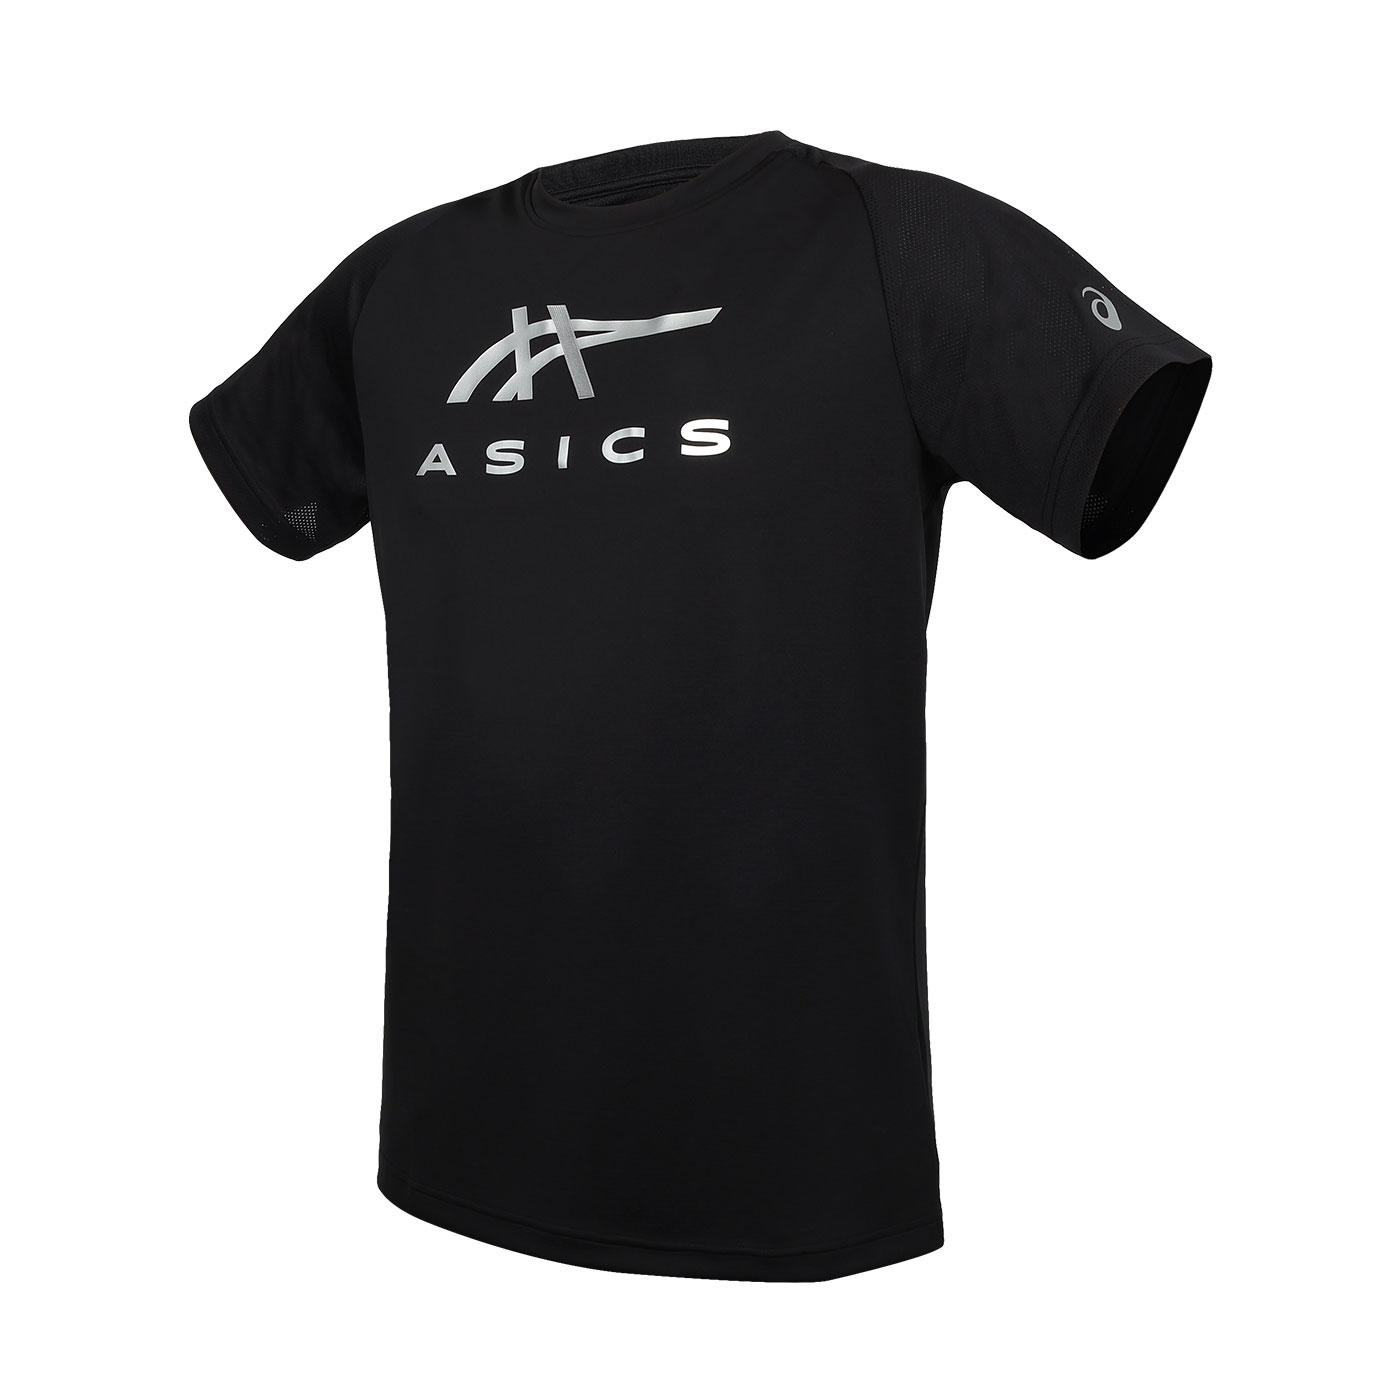 ASICS 男款短袖T恤  2031E781-001 - 黑銀